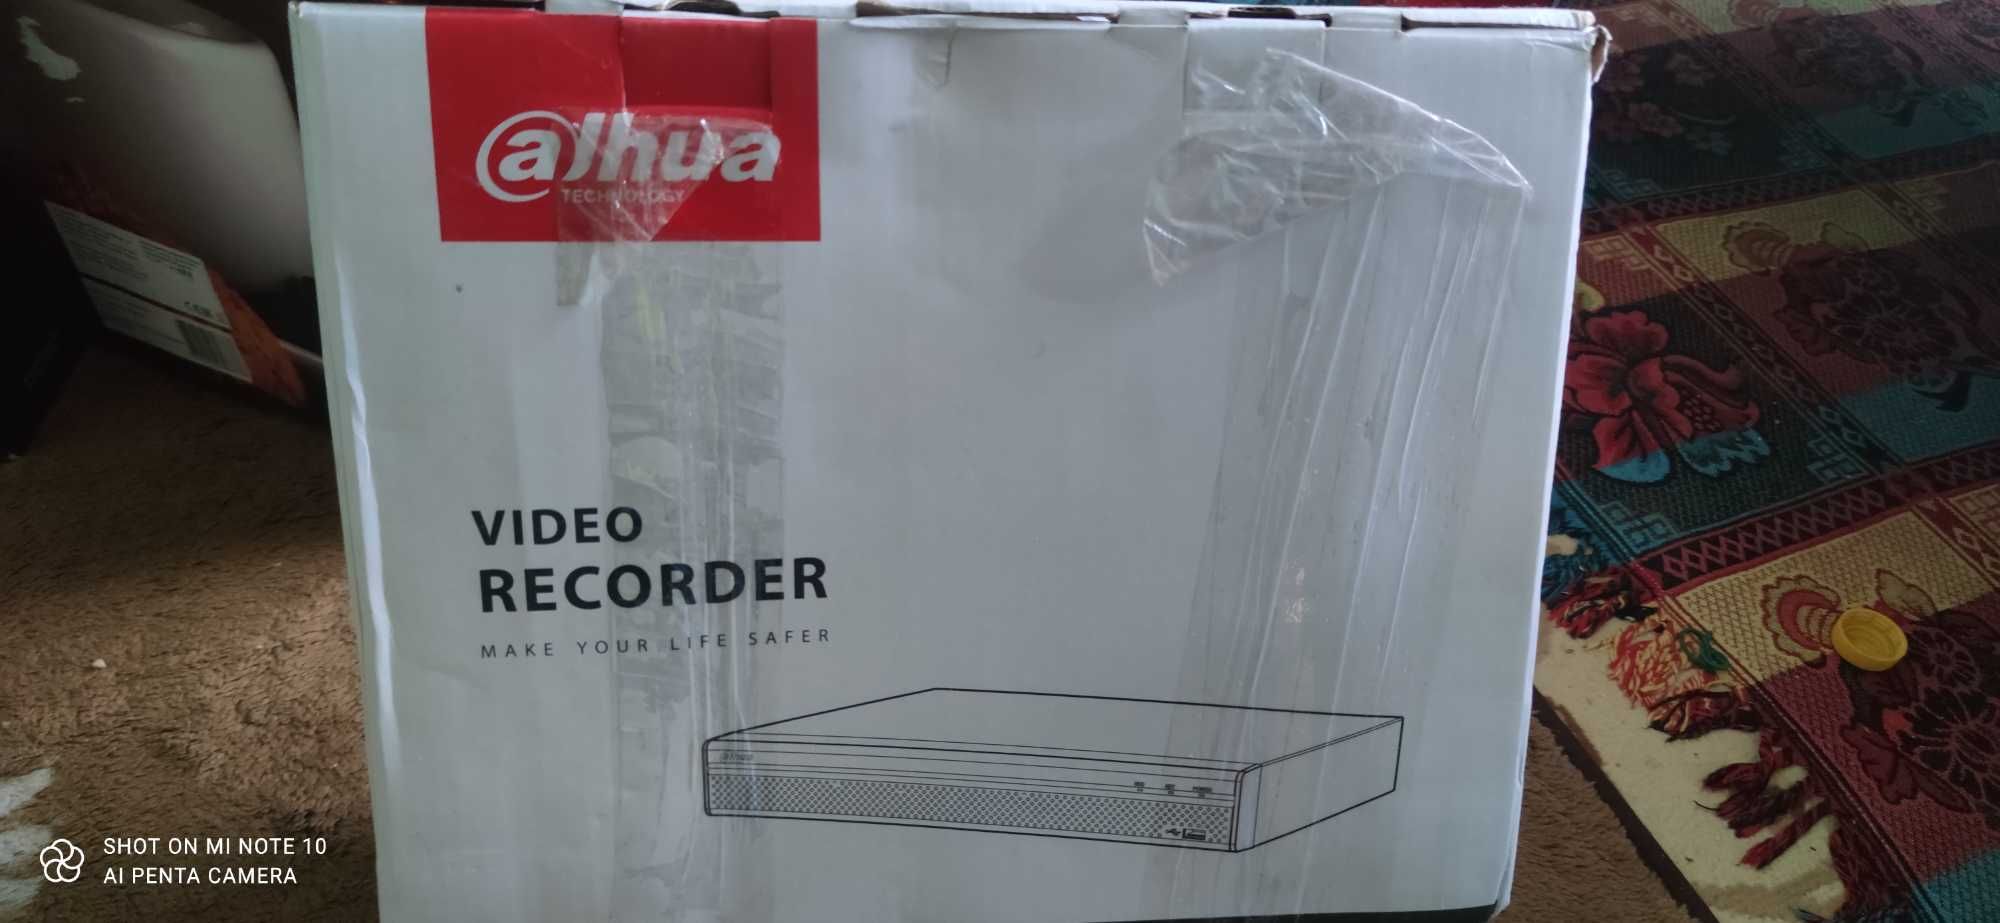 Video Recorder Alhua